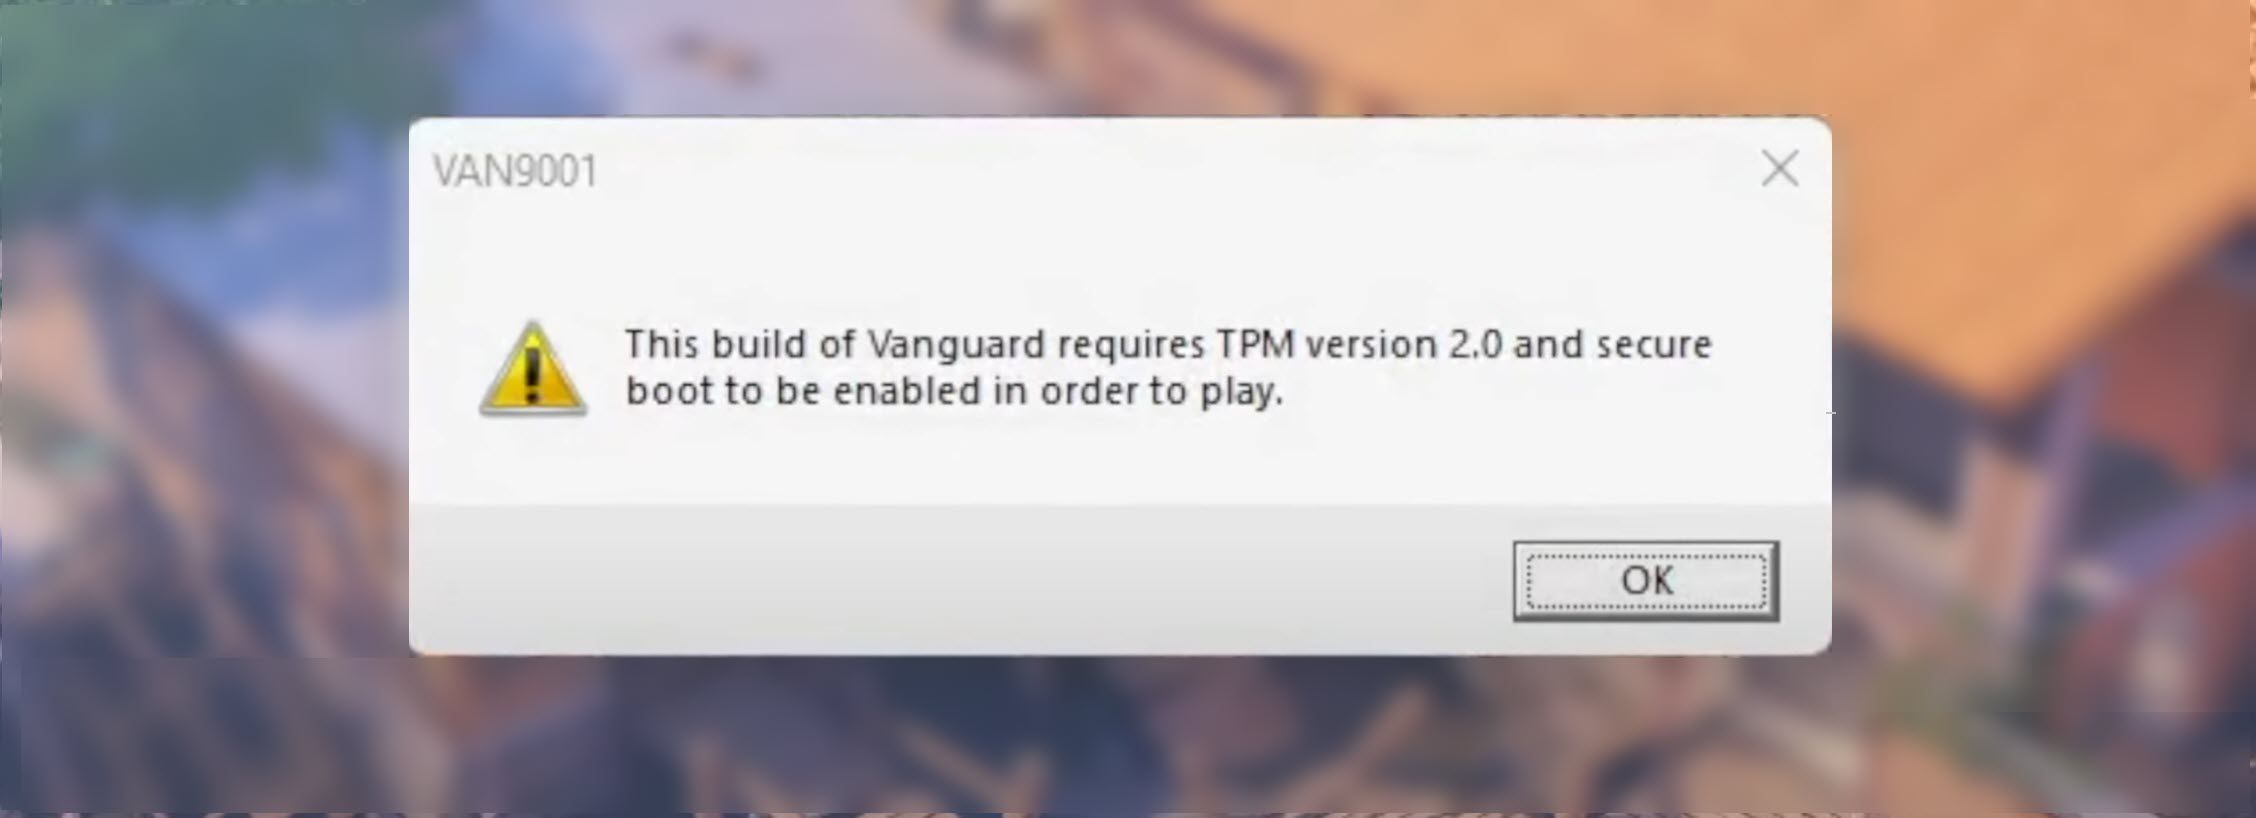 Vanguard VAN9001 Error on Windows